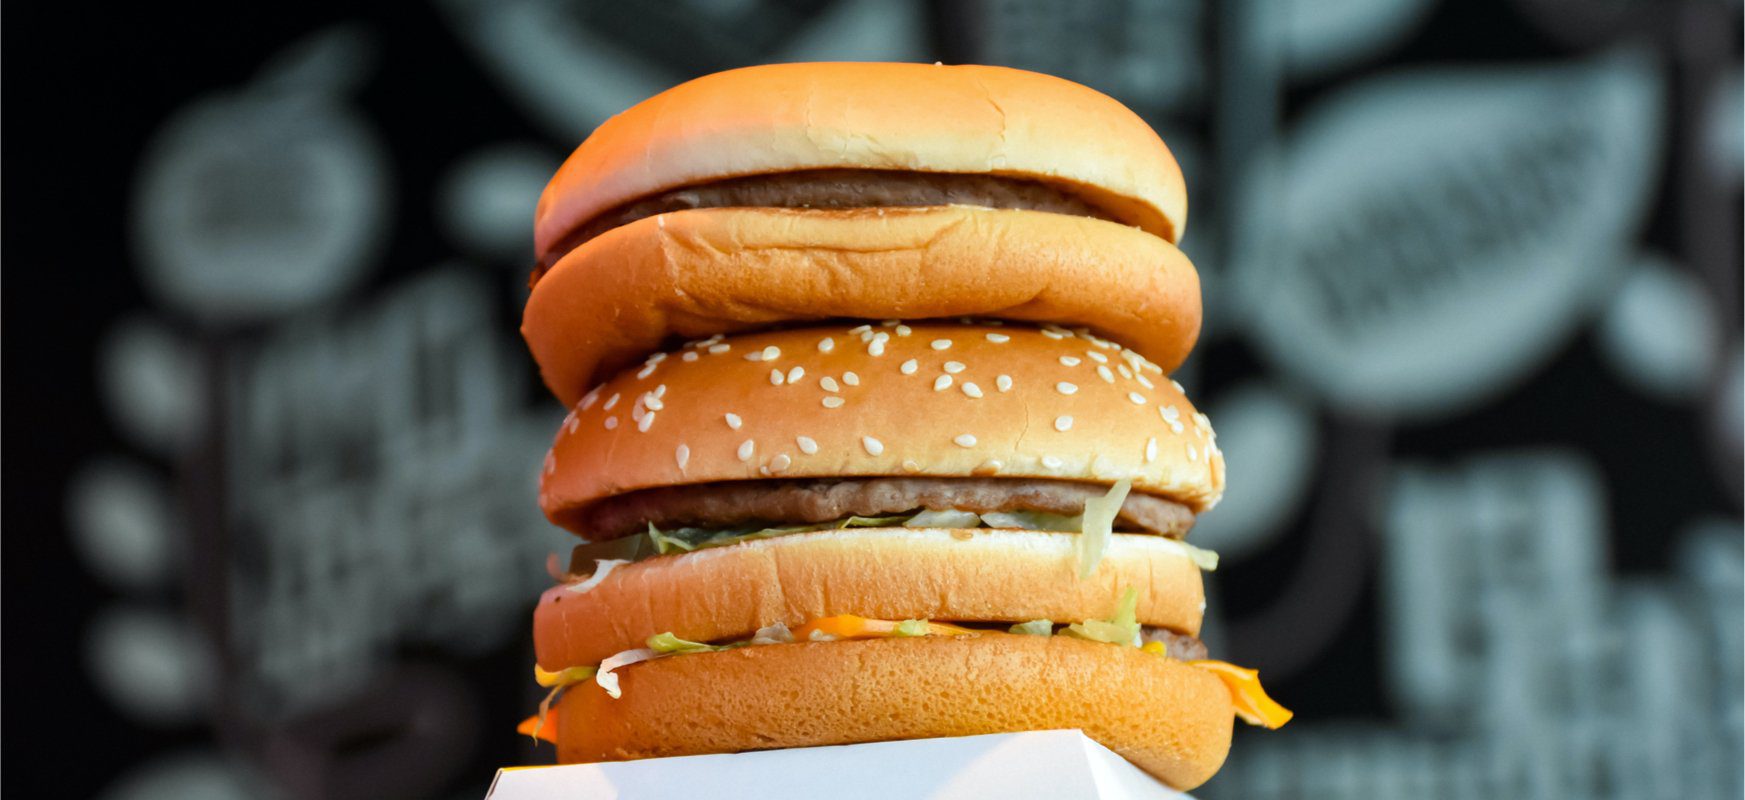 Es verspricht ein wirklich leckeres Sandwich zu werden. McDonald's arbeitet mit Beyond Meat zusammen, um den McPlant-Gemüseburger zu kreieren 21